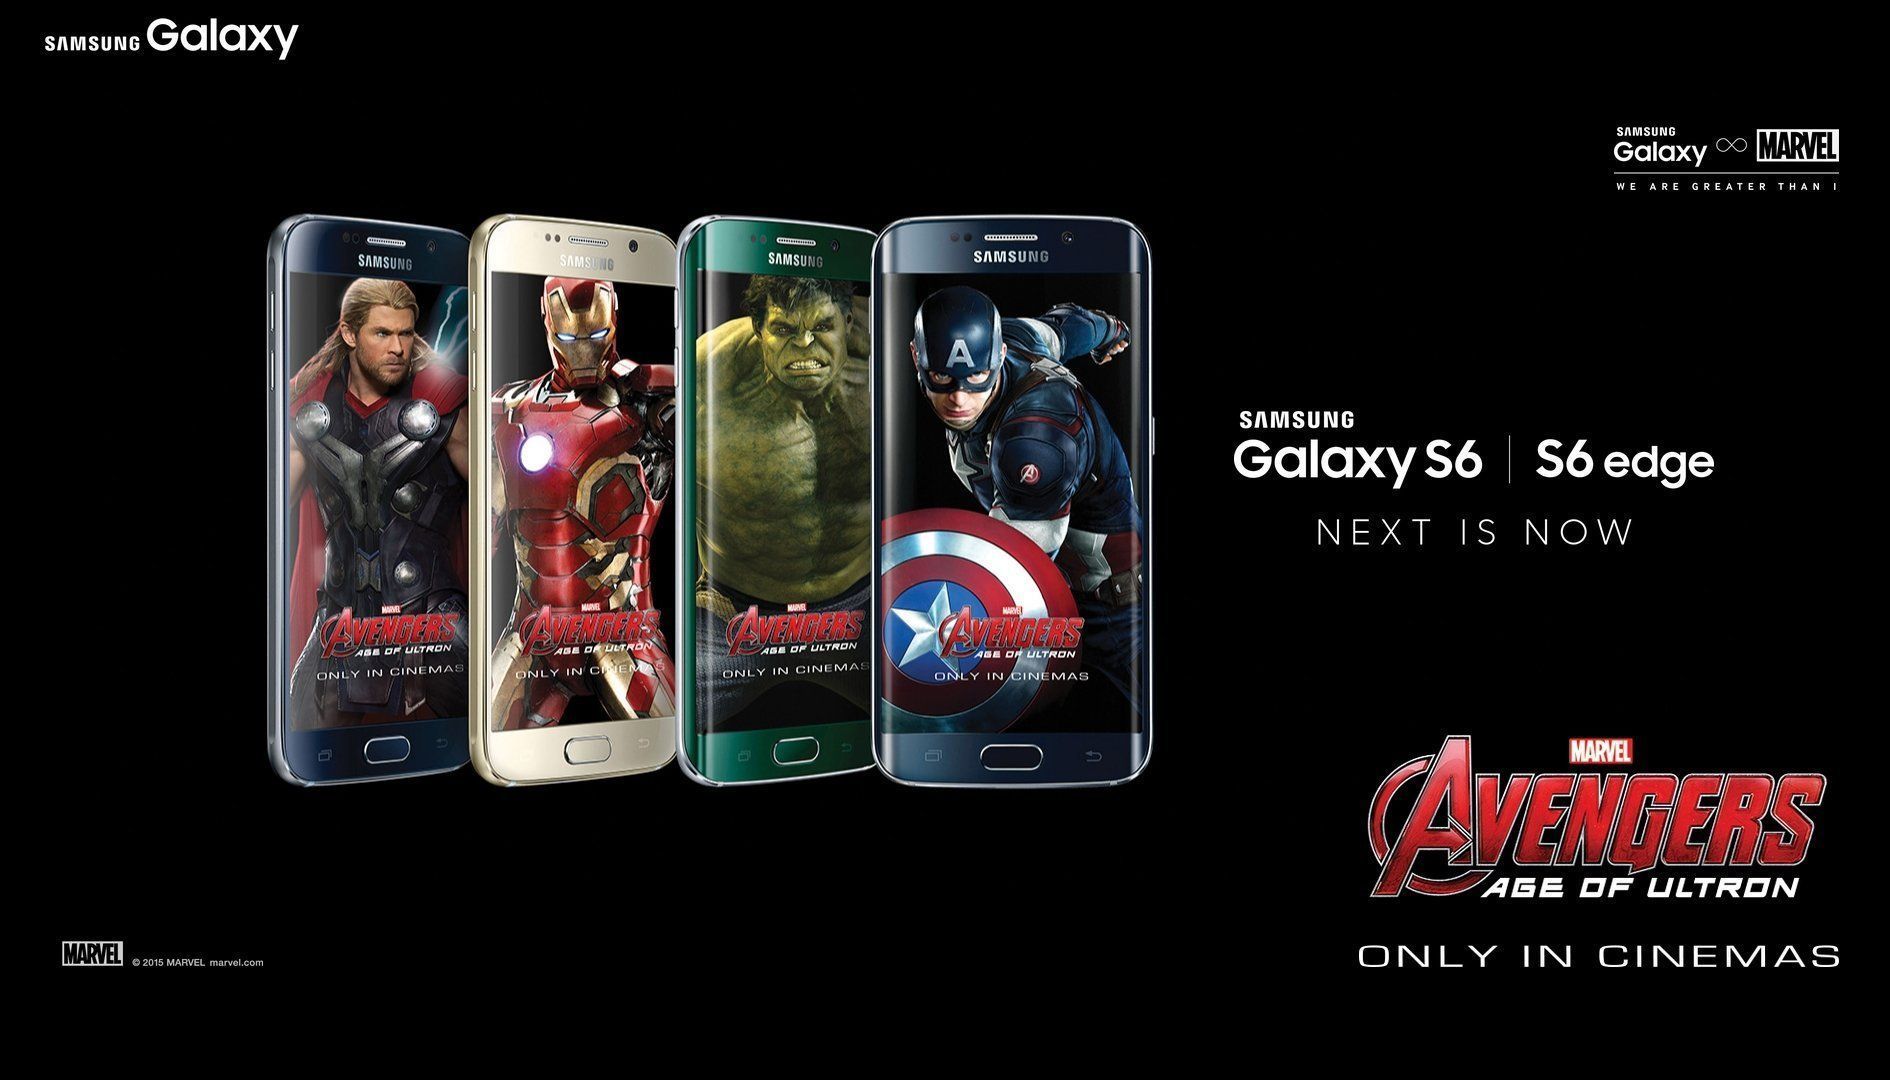 Messi dans une pub Samsung Galaxy S6 / Avengers #2